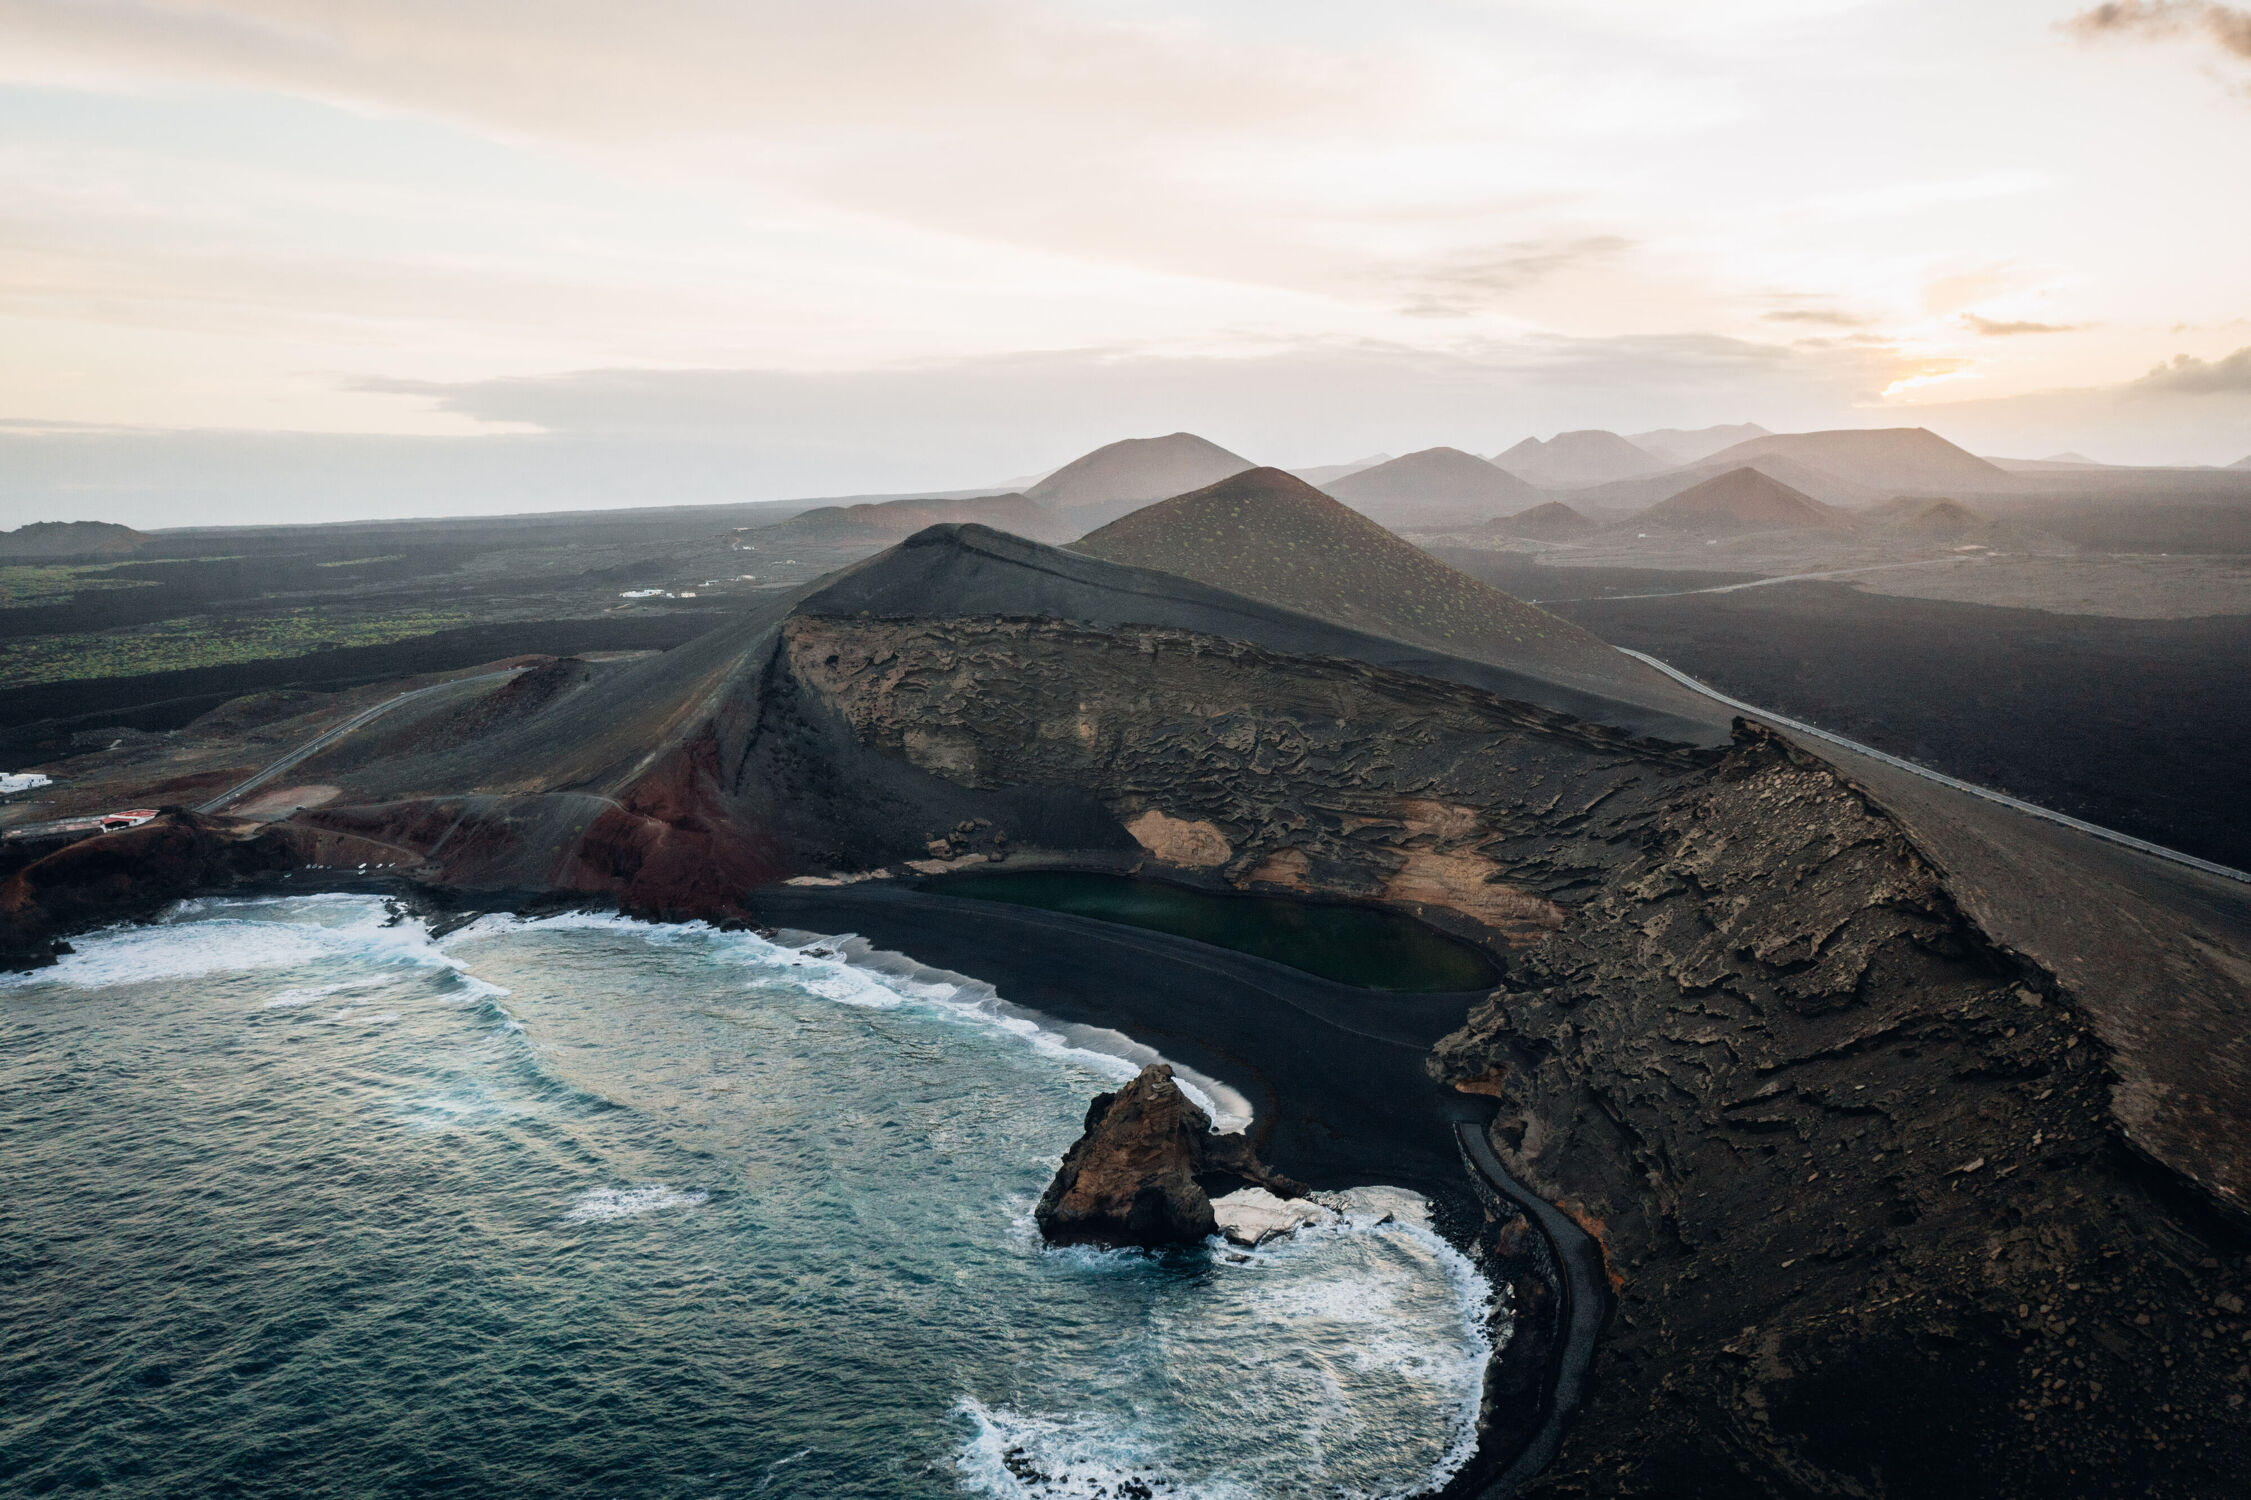 Bild mit Strand, Meer, Insel, Lanzarote, Vulkan, Vulkanlandschaft, Kanaren, schwarzer Strand, blaues meer, Drohnefoto